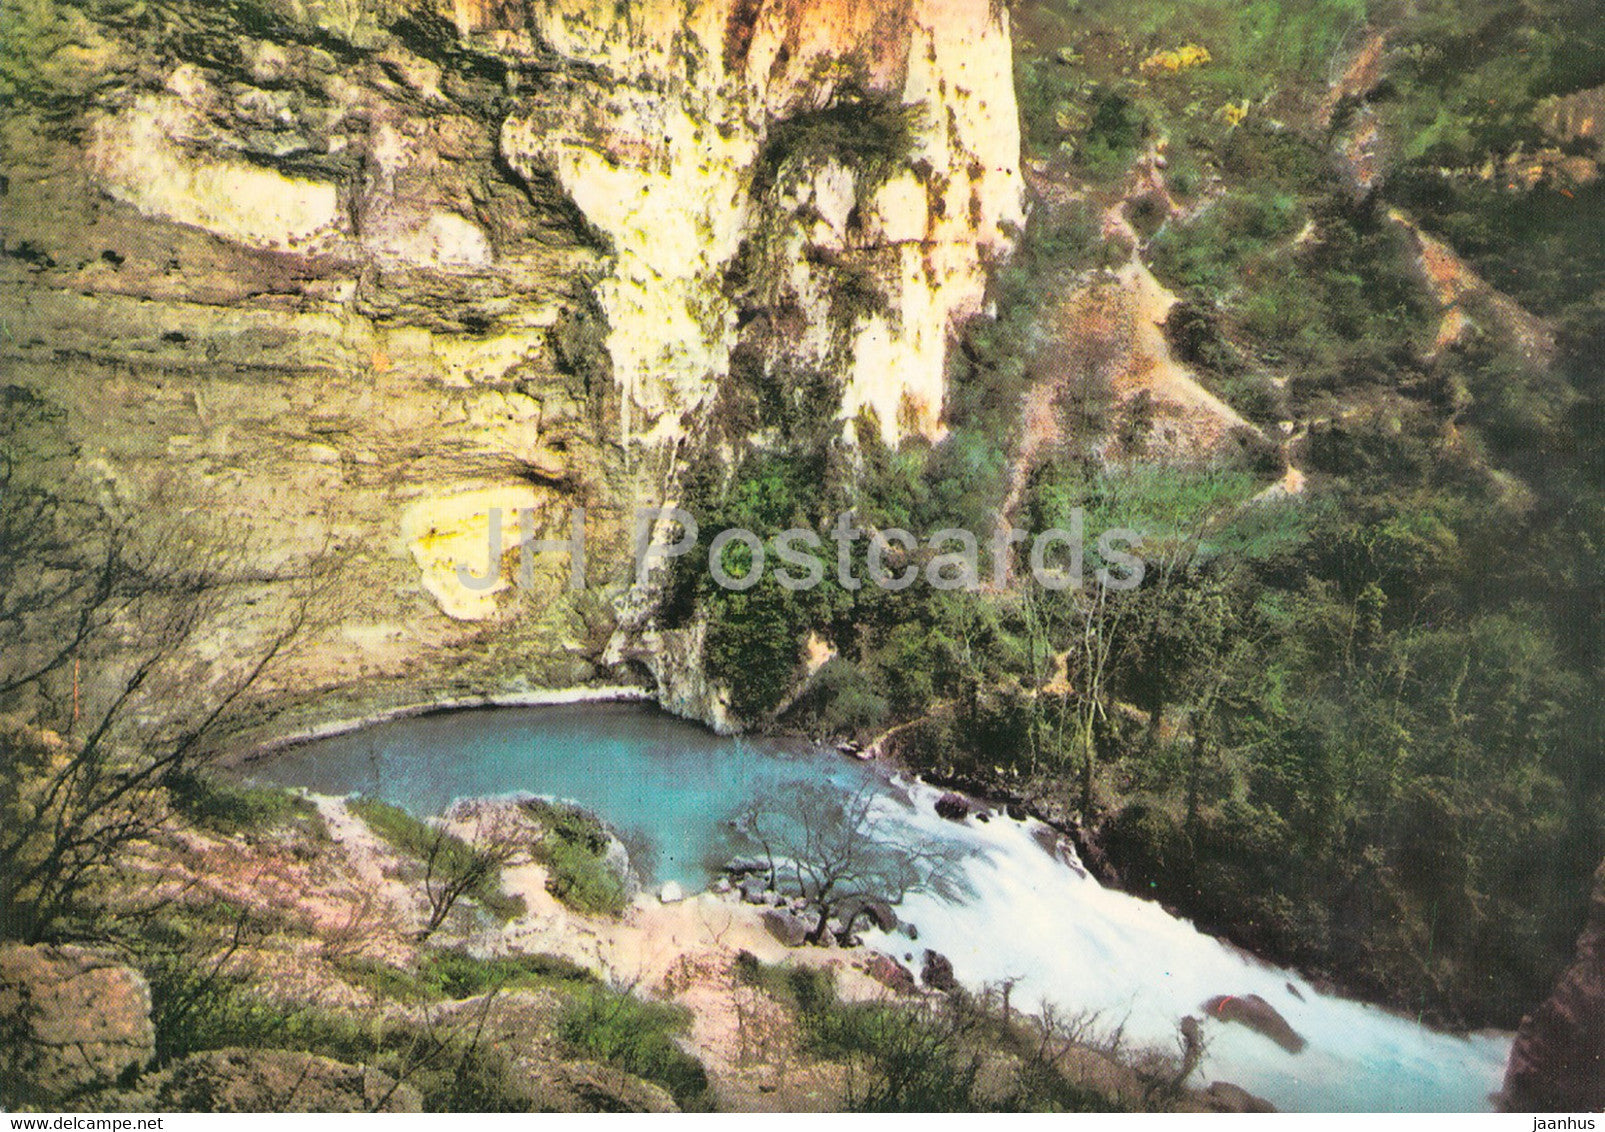 Fontaine de Vaucluse - Naissance de la Source par Hautes Eaux - France - unused - JH Postcards